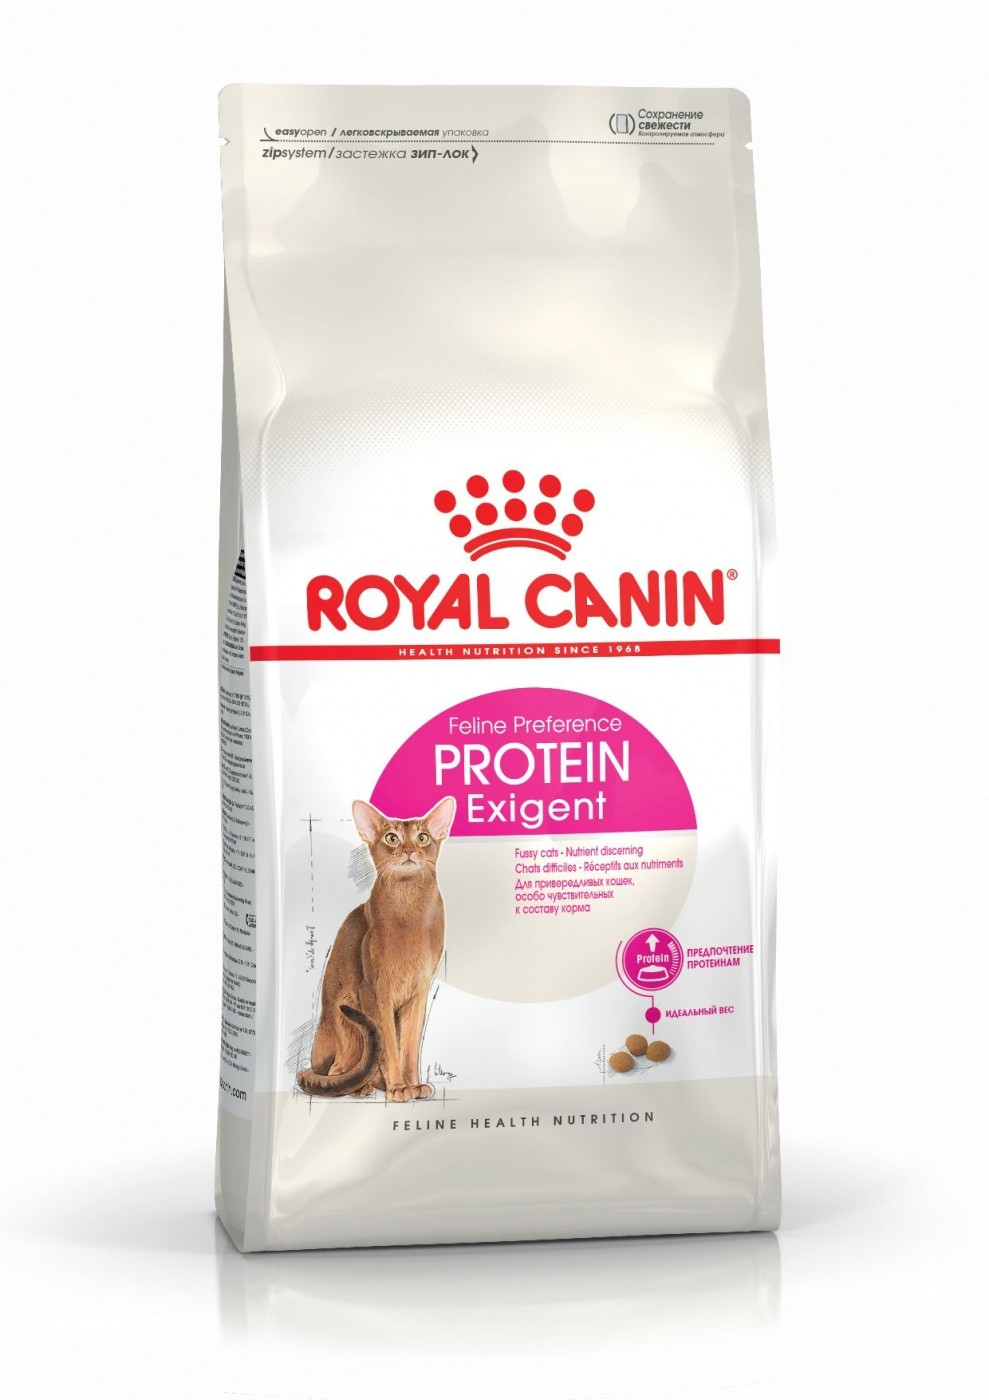 Royal Canin Protein Exigent für erwachsene Katze die schlechte Esser sind